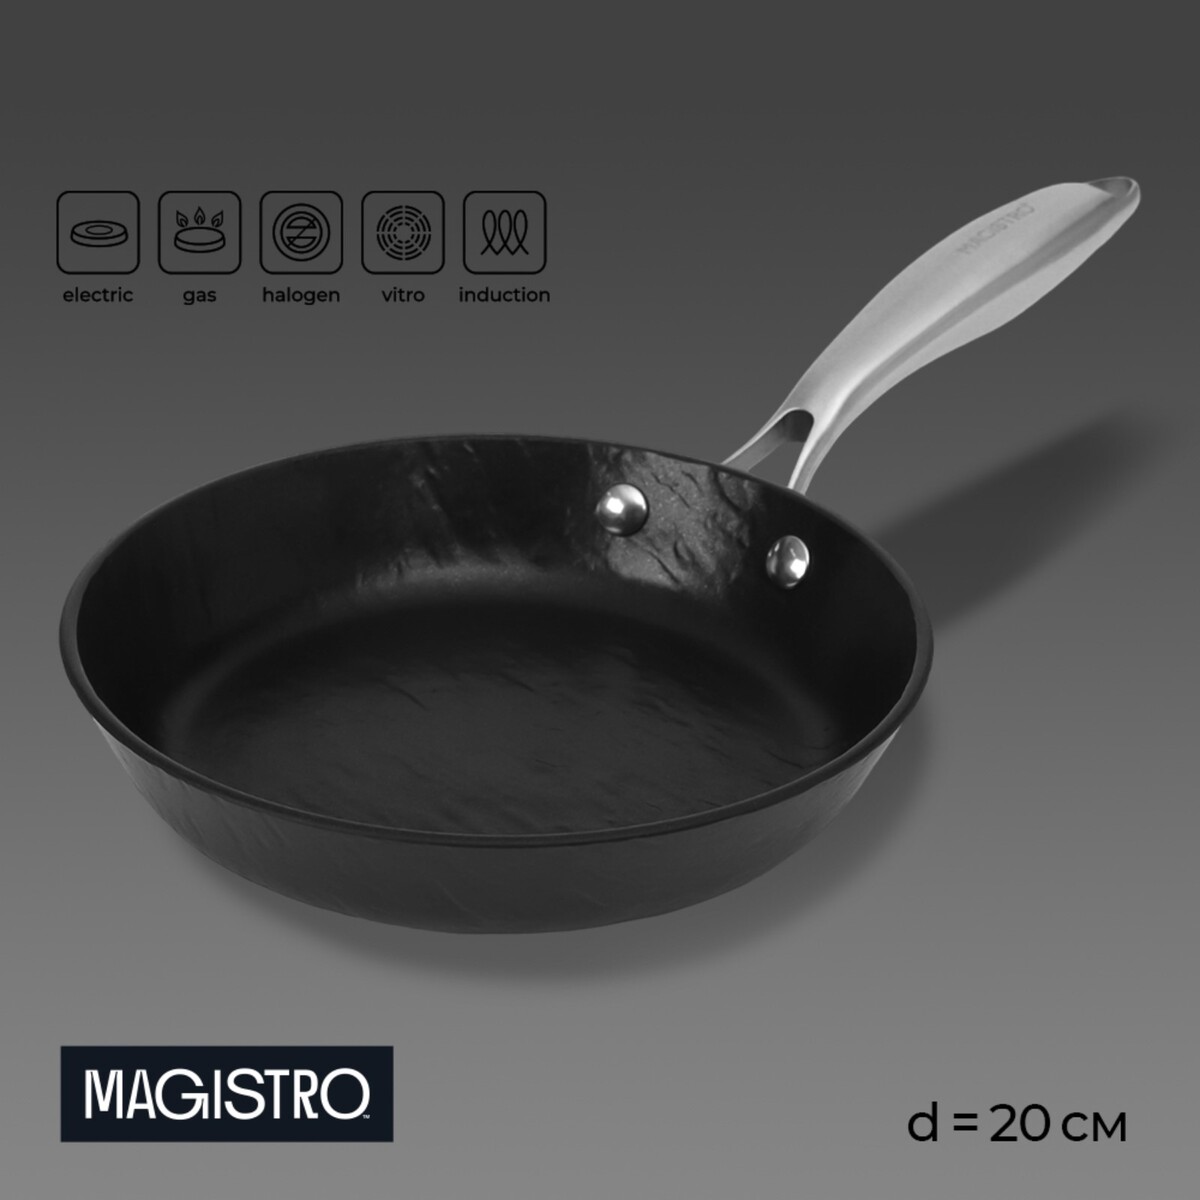 Сковорода magistro rock stone, d=20 см, h=4 см, антипригарное покрытие, индукция, цвет черный